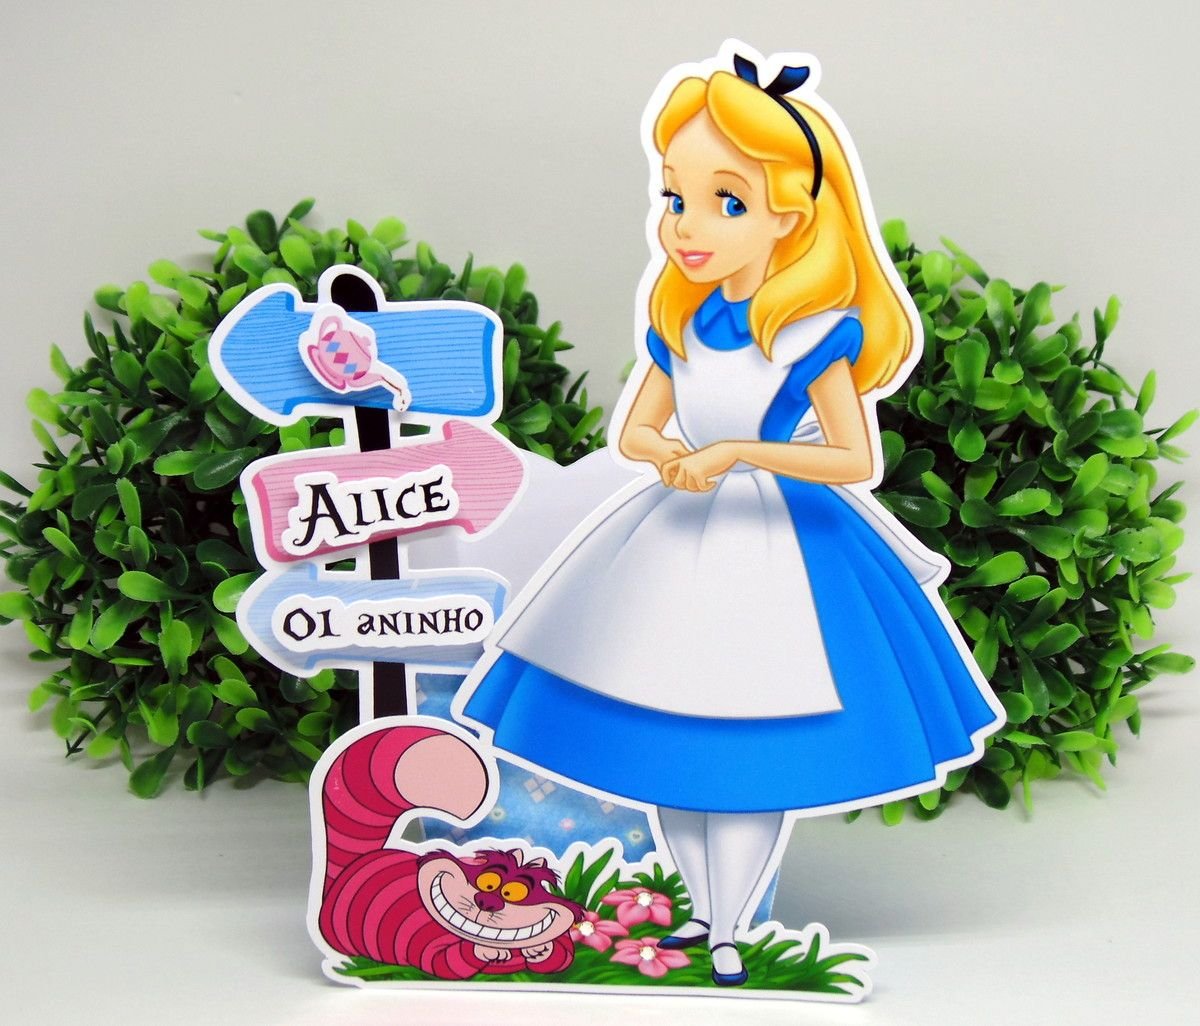 Alice buy. Топеры Алиса в стране чудес. Алиса в стране чудес атрибуты. Топеры для торта Алиса в стране чудес. Топпер Алиса в стране чудес.